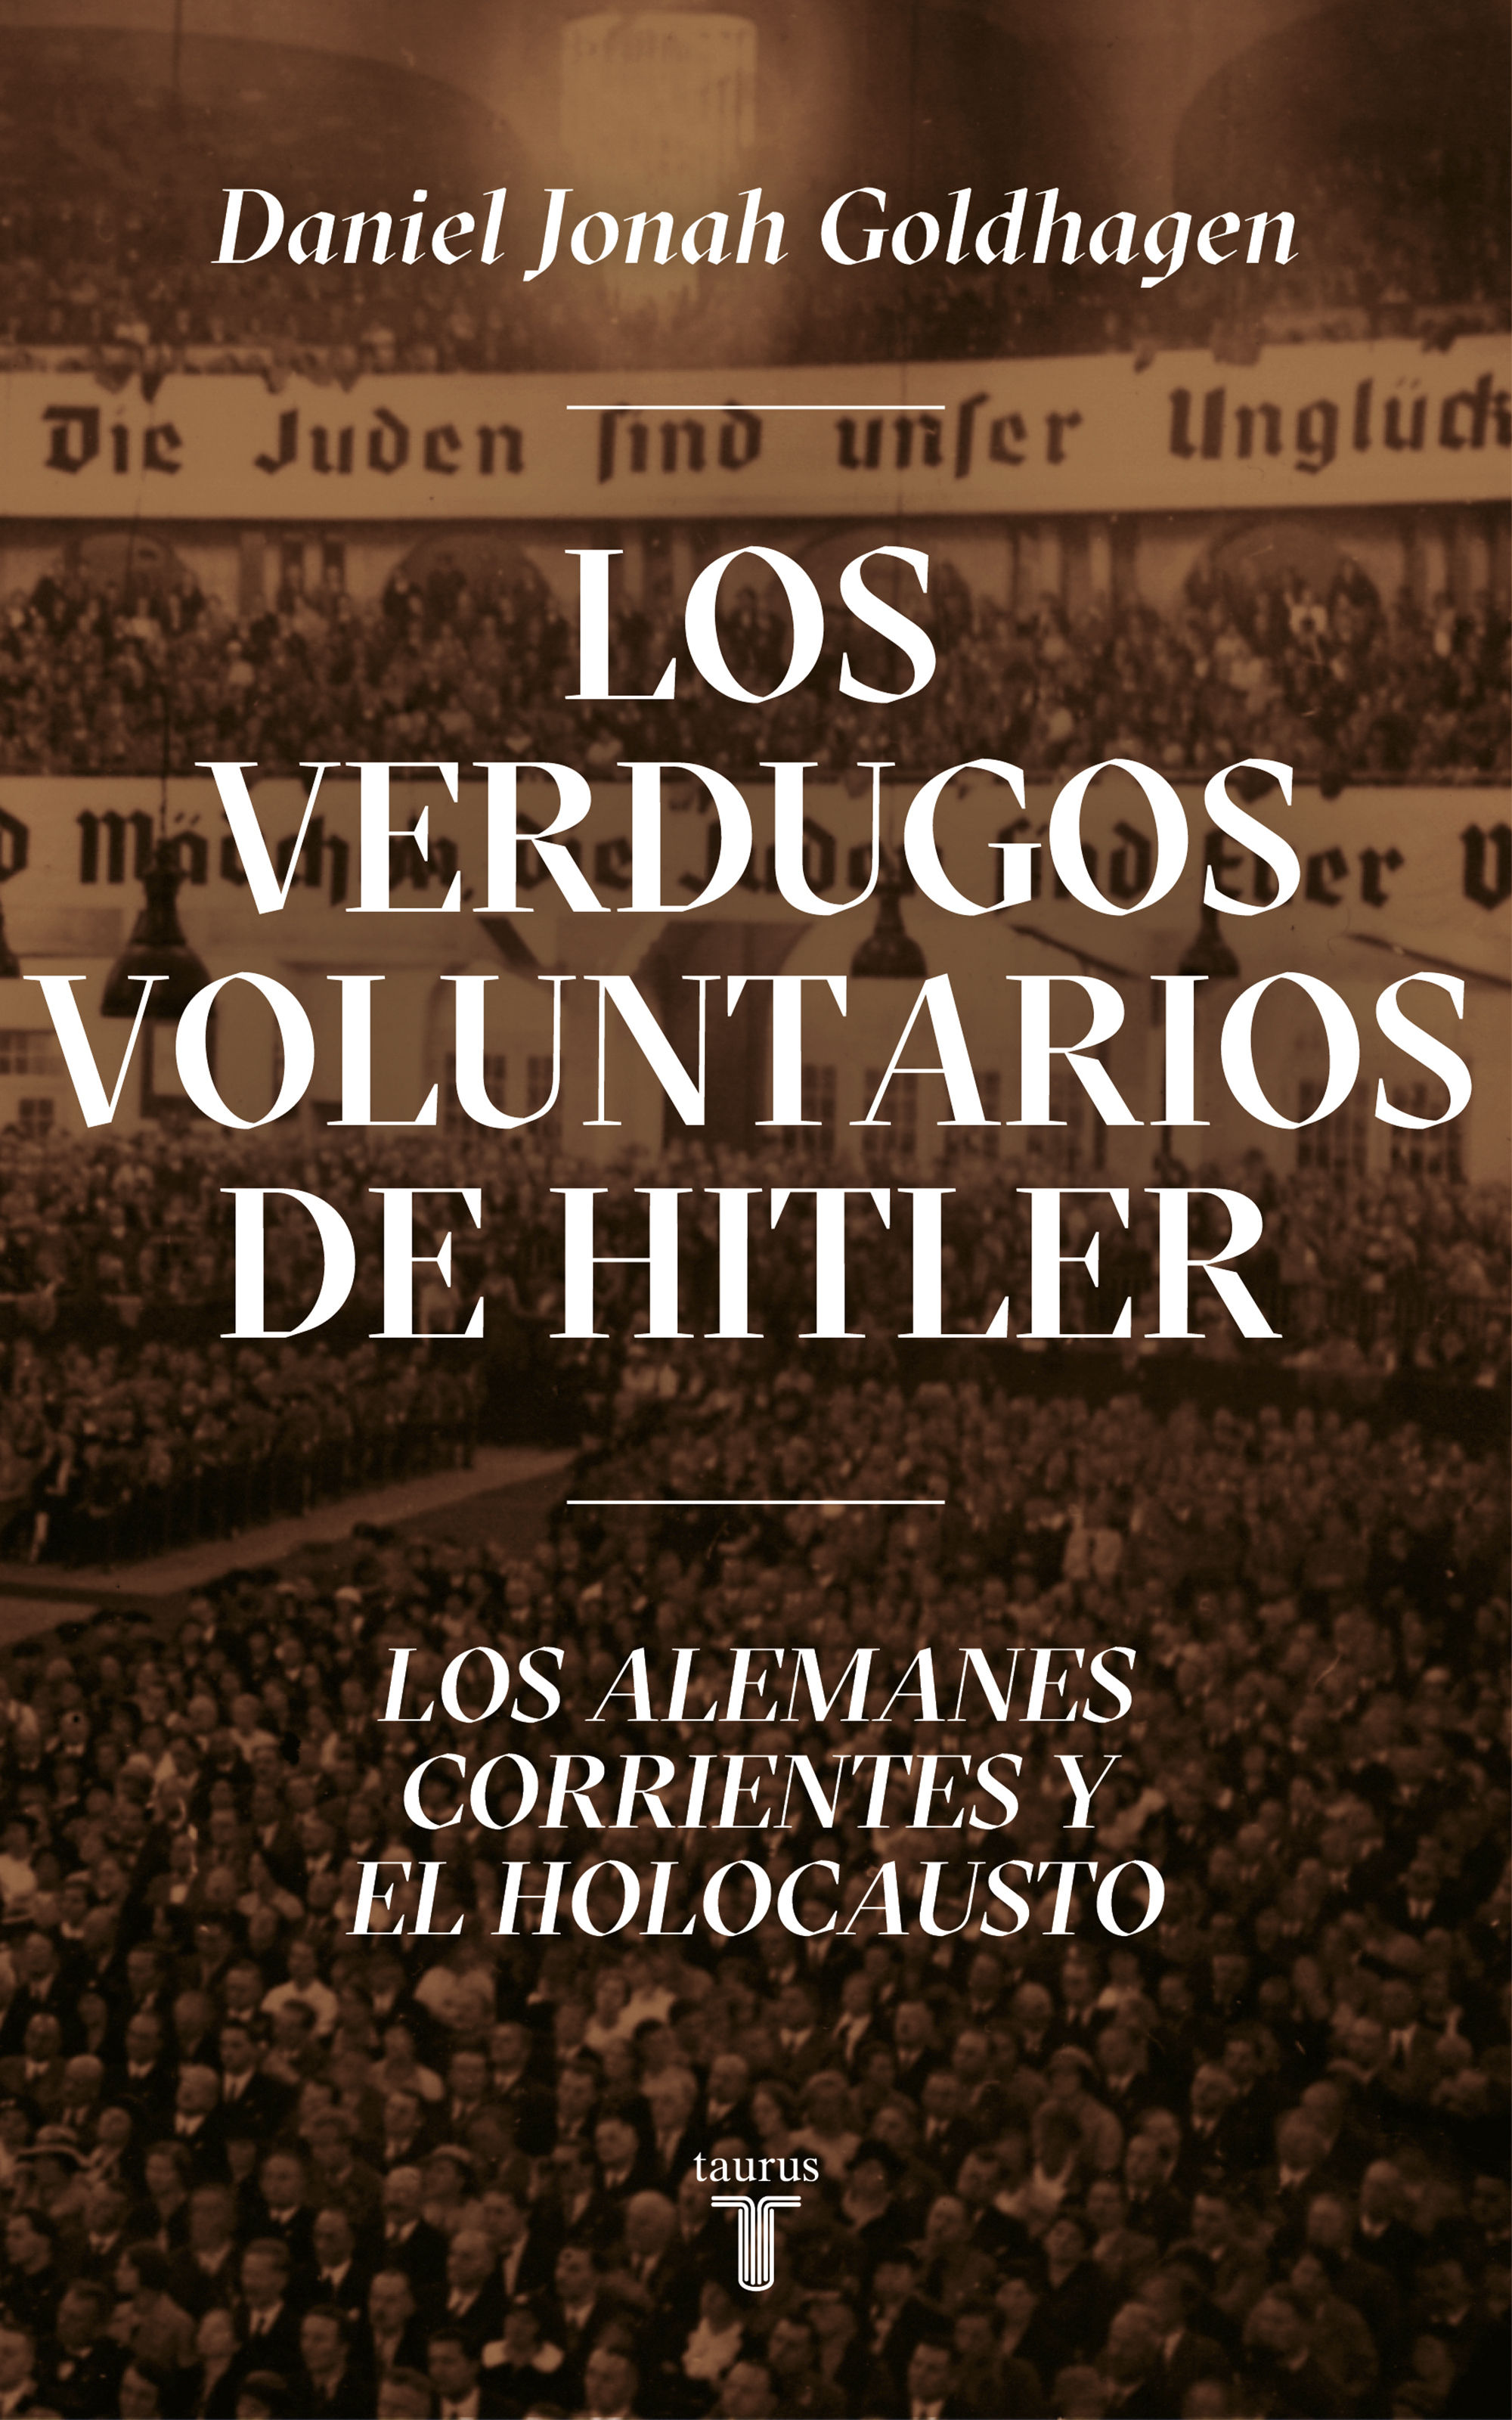 LOS VERDUGOS VOLUNTARIOS DE HITLER. LOS ALEMANES CORRIENTES Y EL HOLOCAUSTO